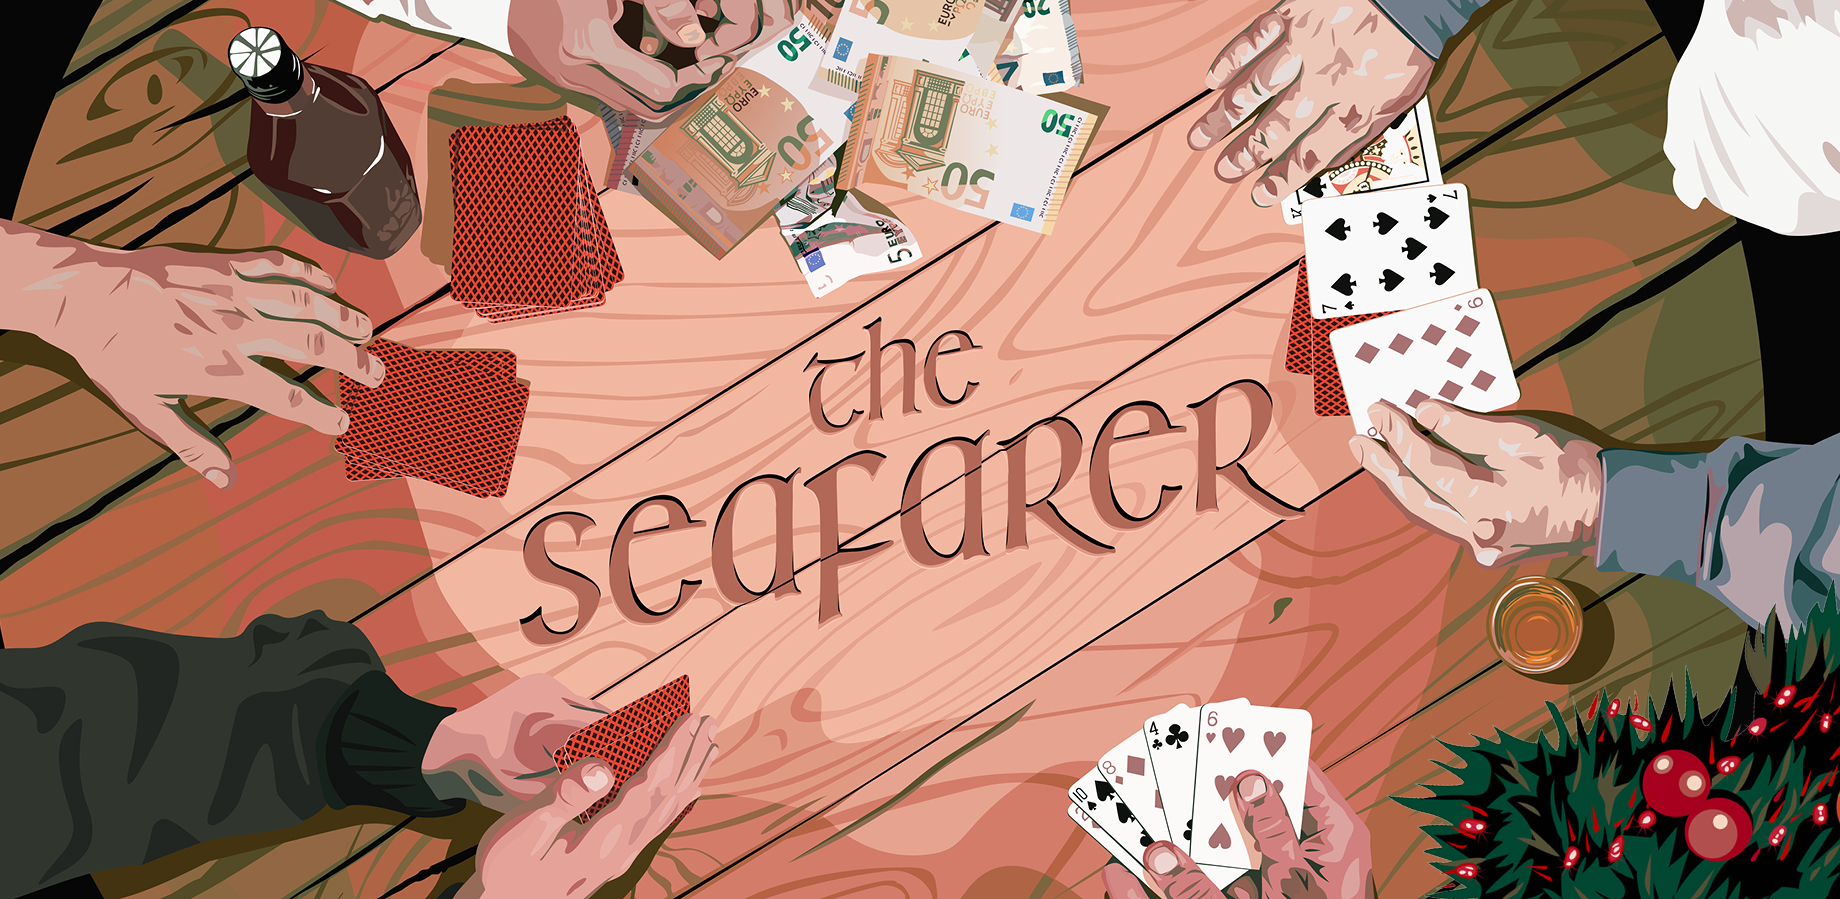 The Seafarer image